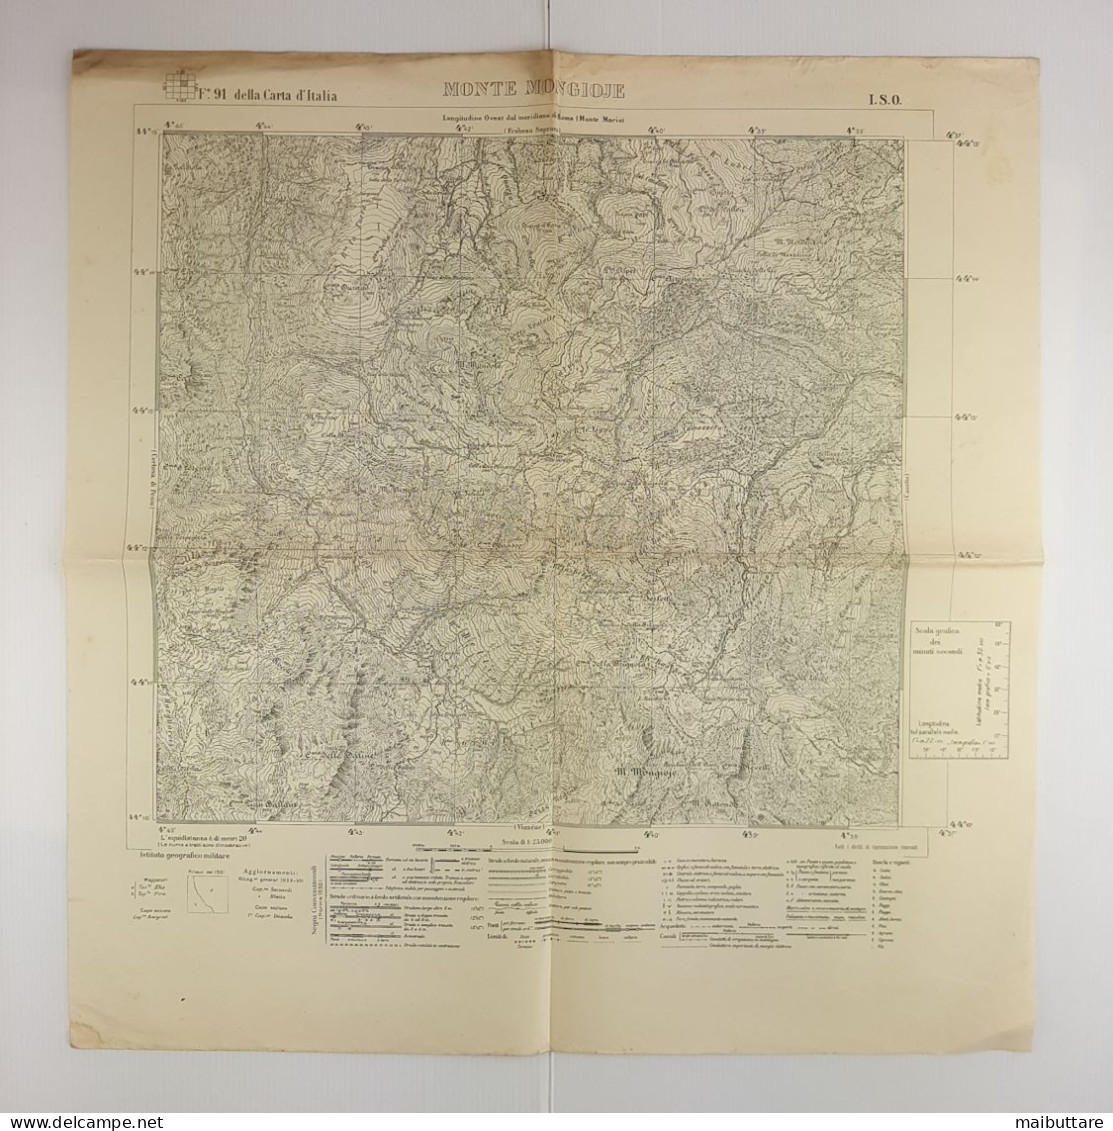 Carta Geografica, Cartina Mappa Militare Monte Mongioje F91 Della Carta D'Italia - Carte Geographique